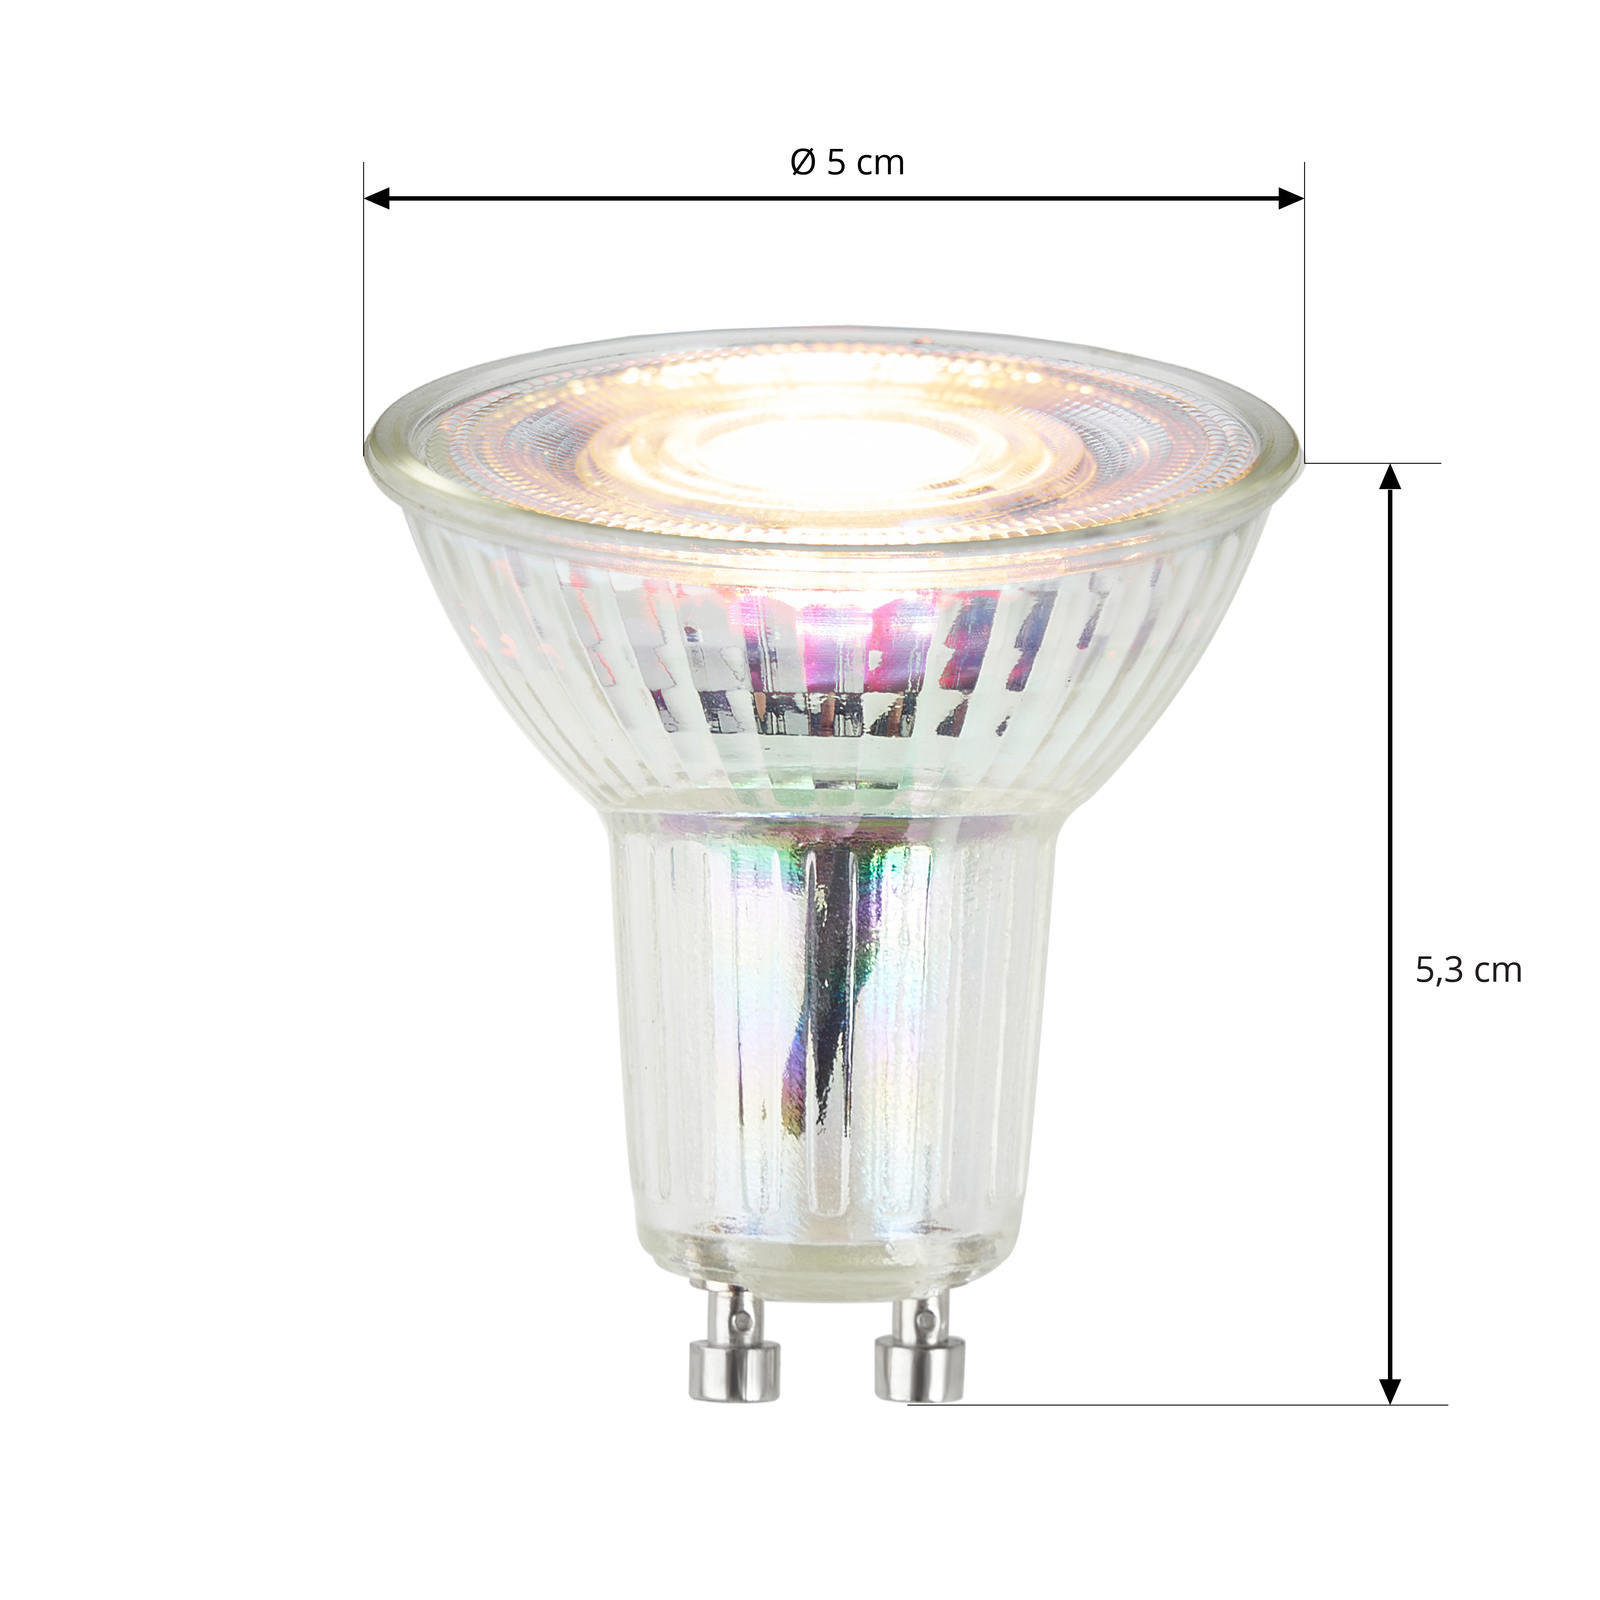 LED-reflektor GU10 3W 3 000 K 36° glas